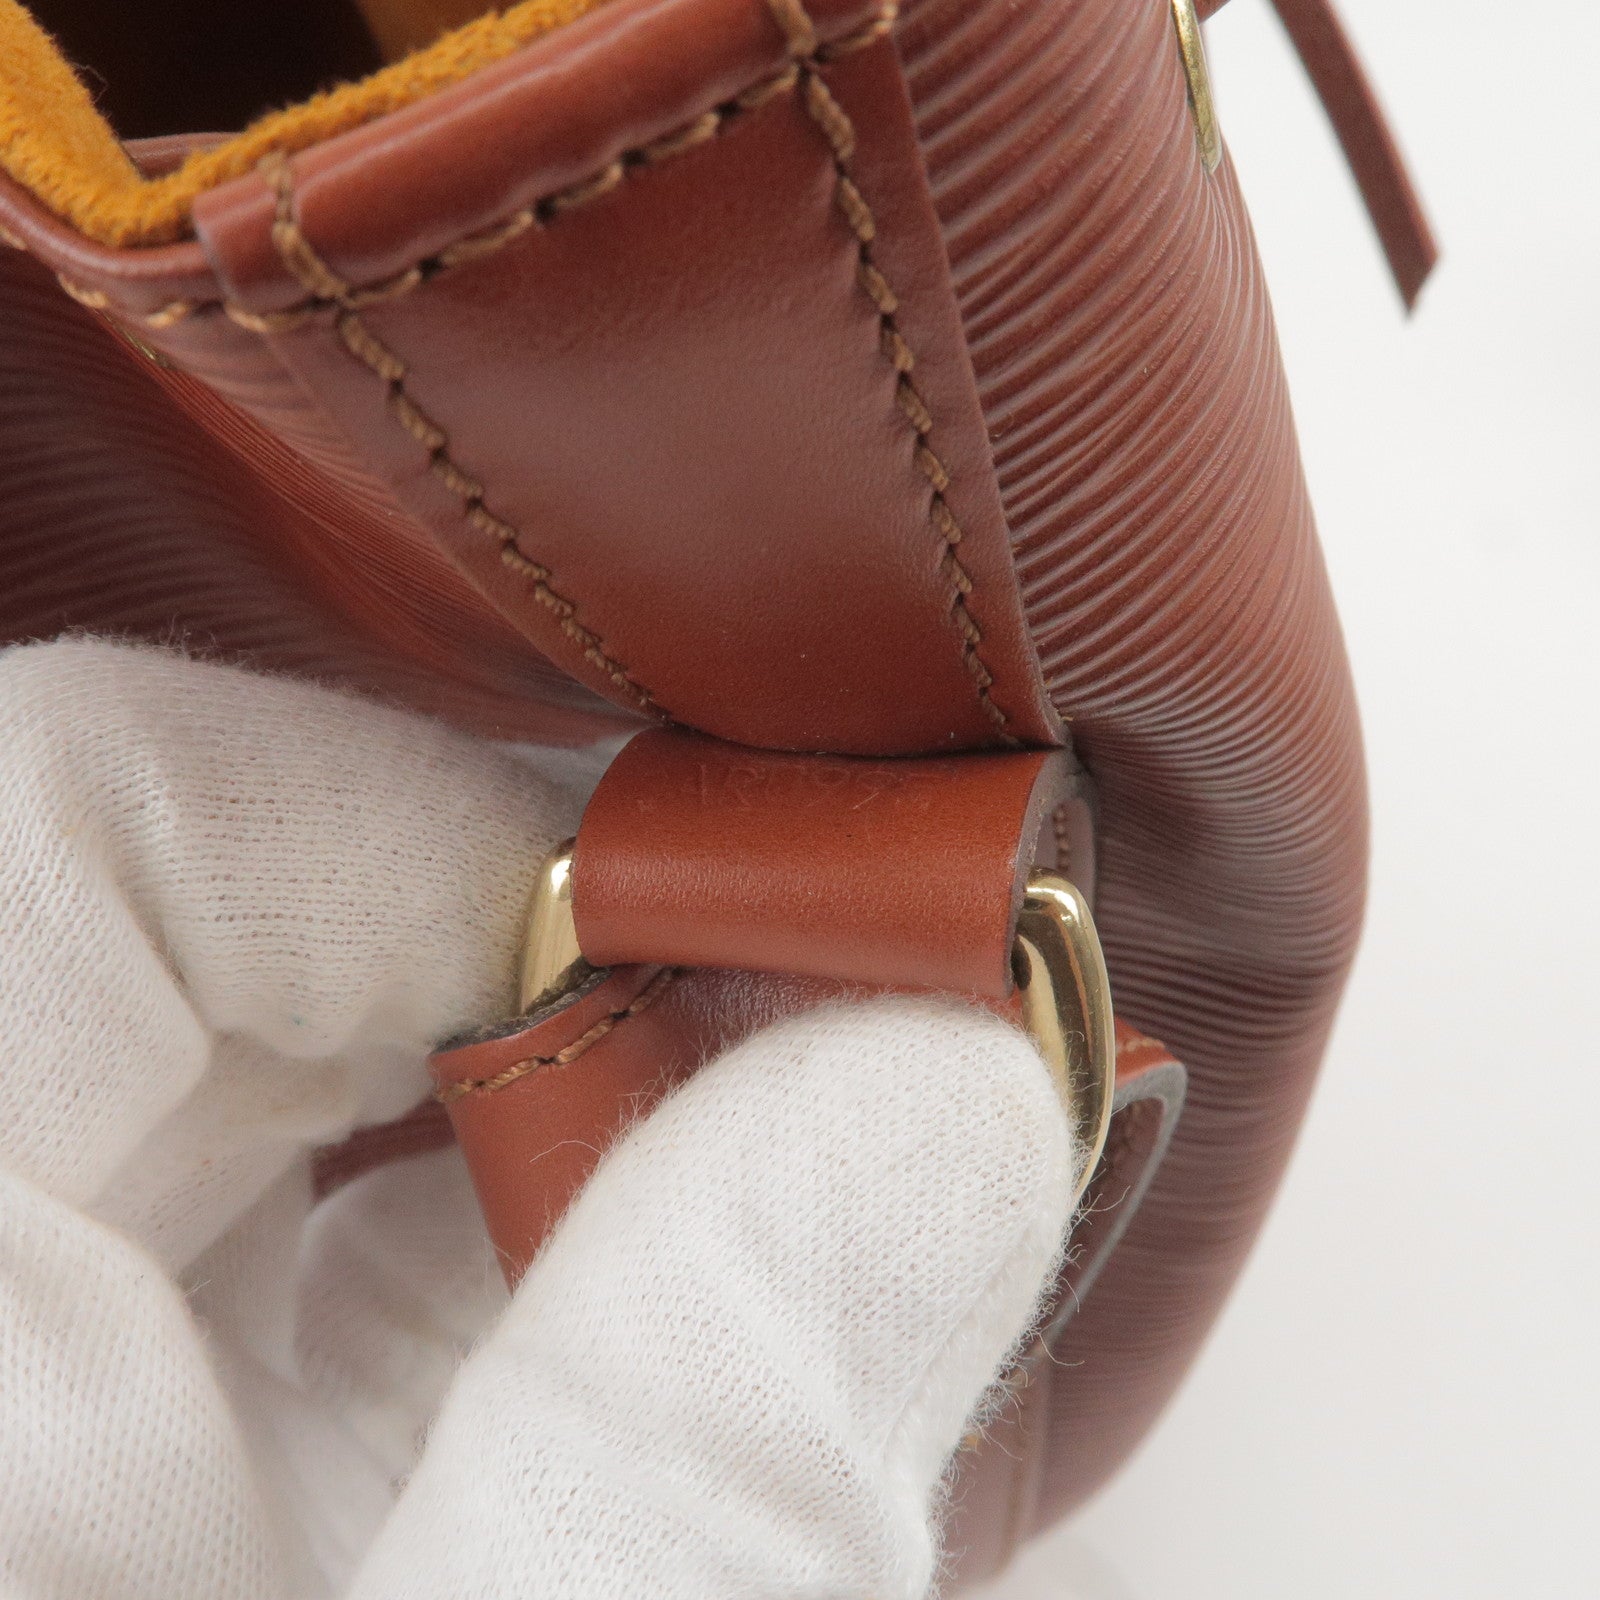 Louis Vuitton Epi Leather Bag Vintage